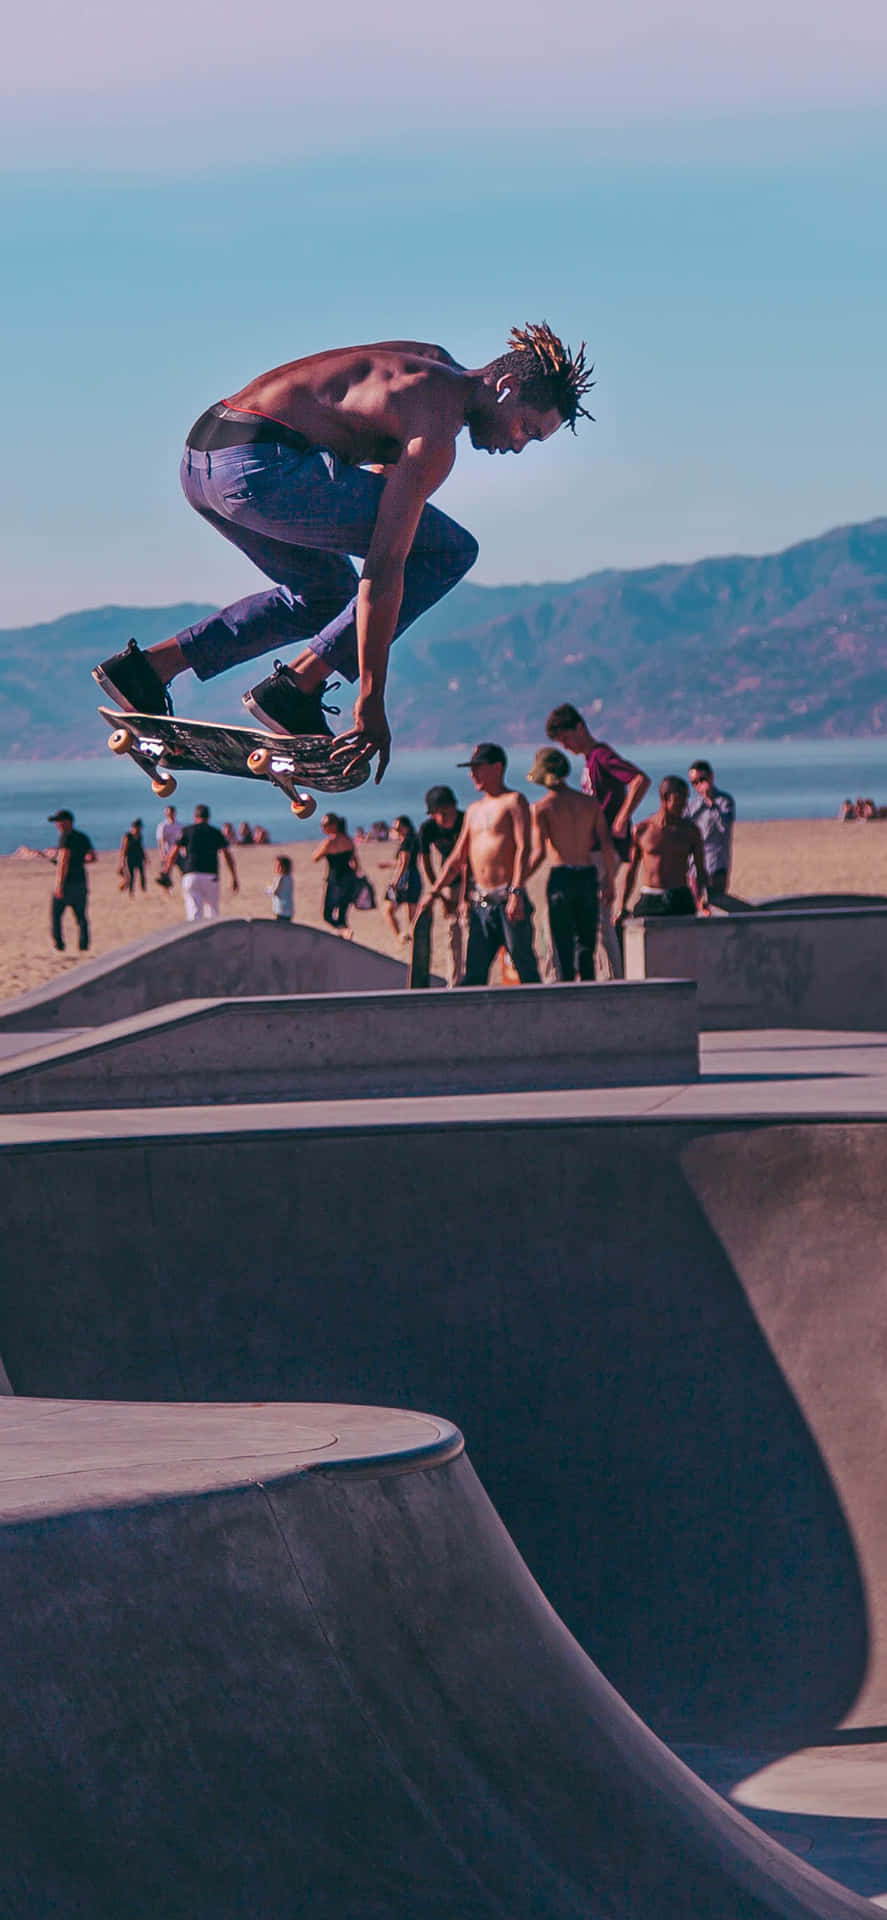 A Man Doing A Trick On A Skateboard Wallpaper